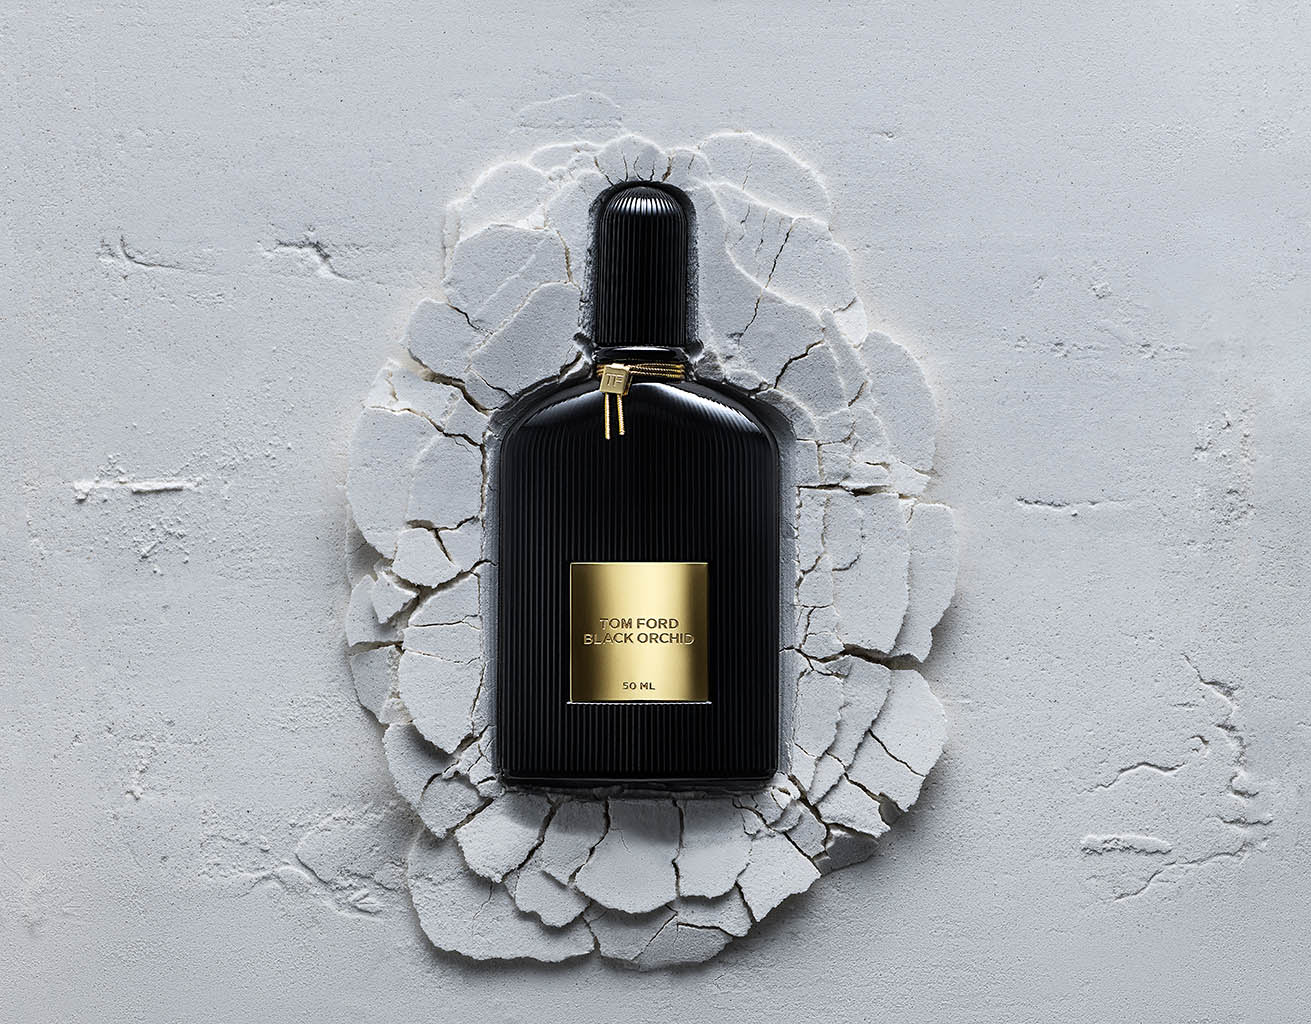 Packshot Factory - Fragrance - Tom Ford Black Orchid fragrance bottle